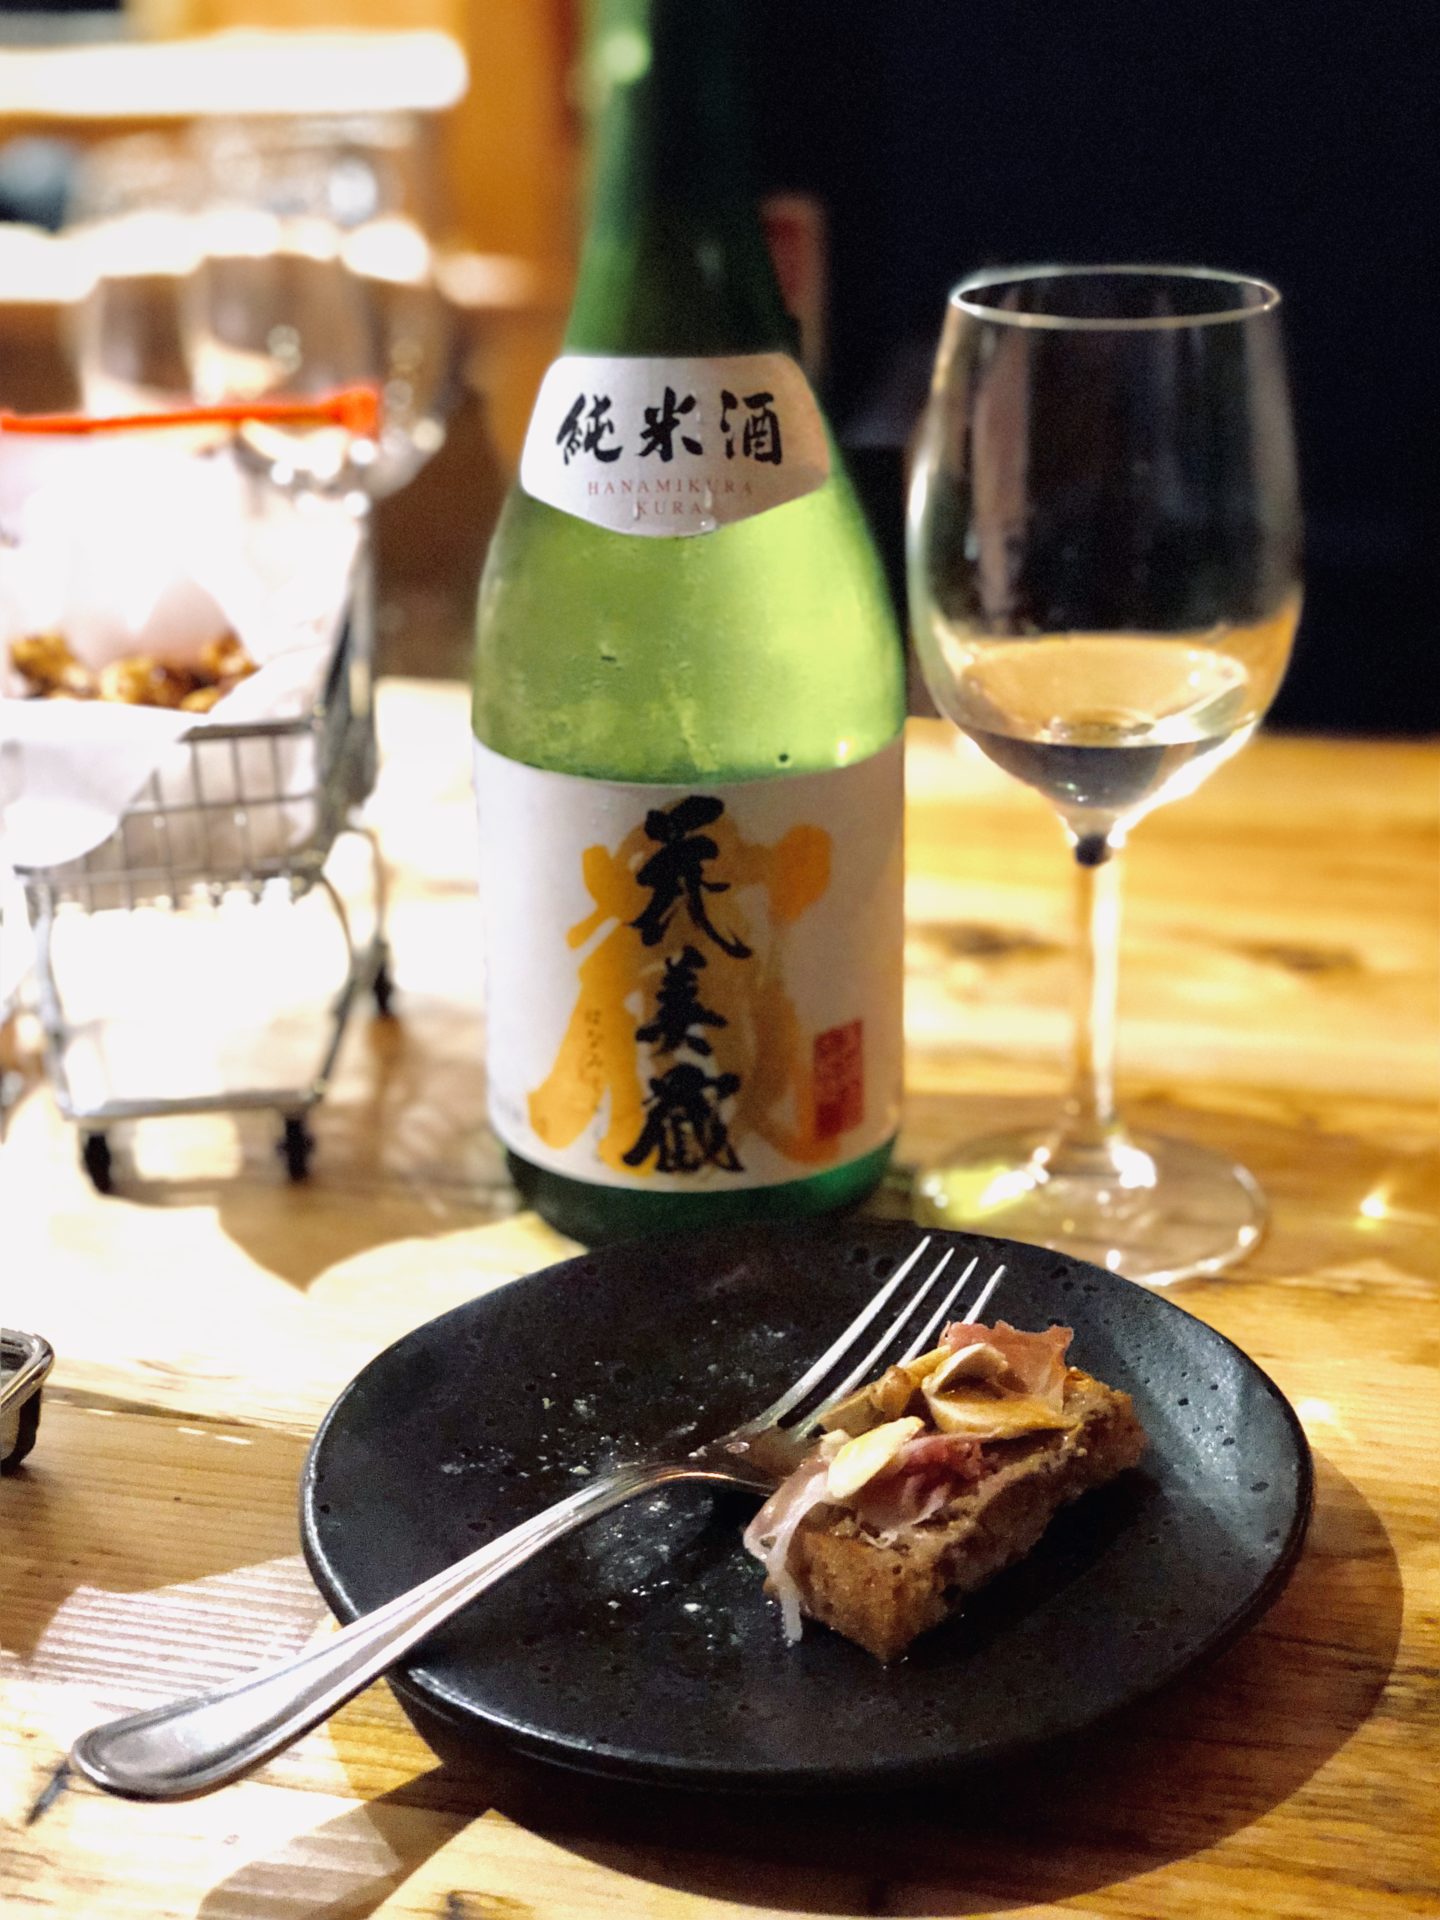 Sakenoteca, London, sake and food pairing in London